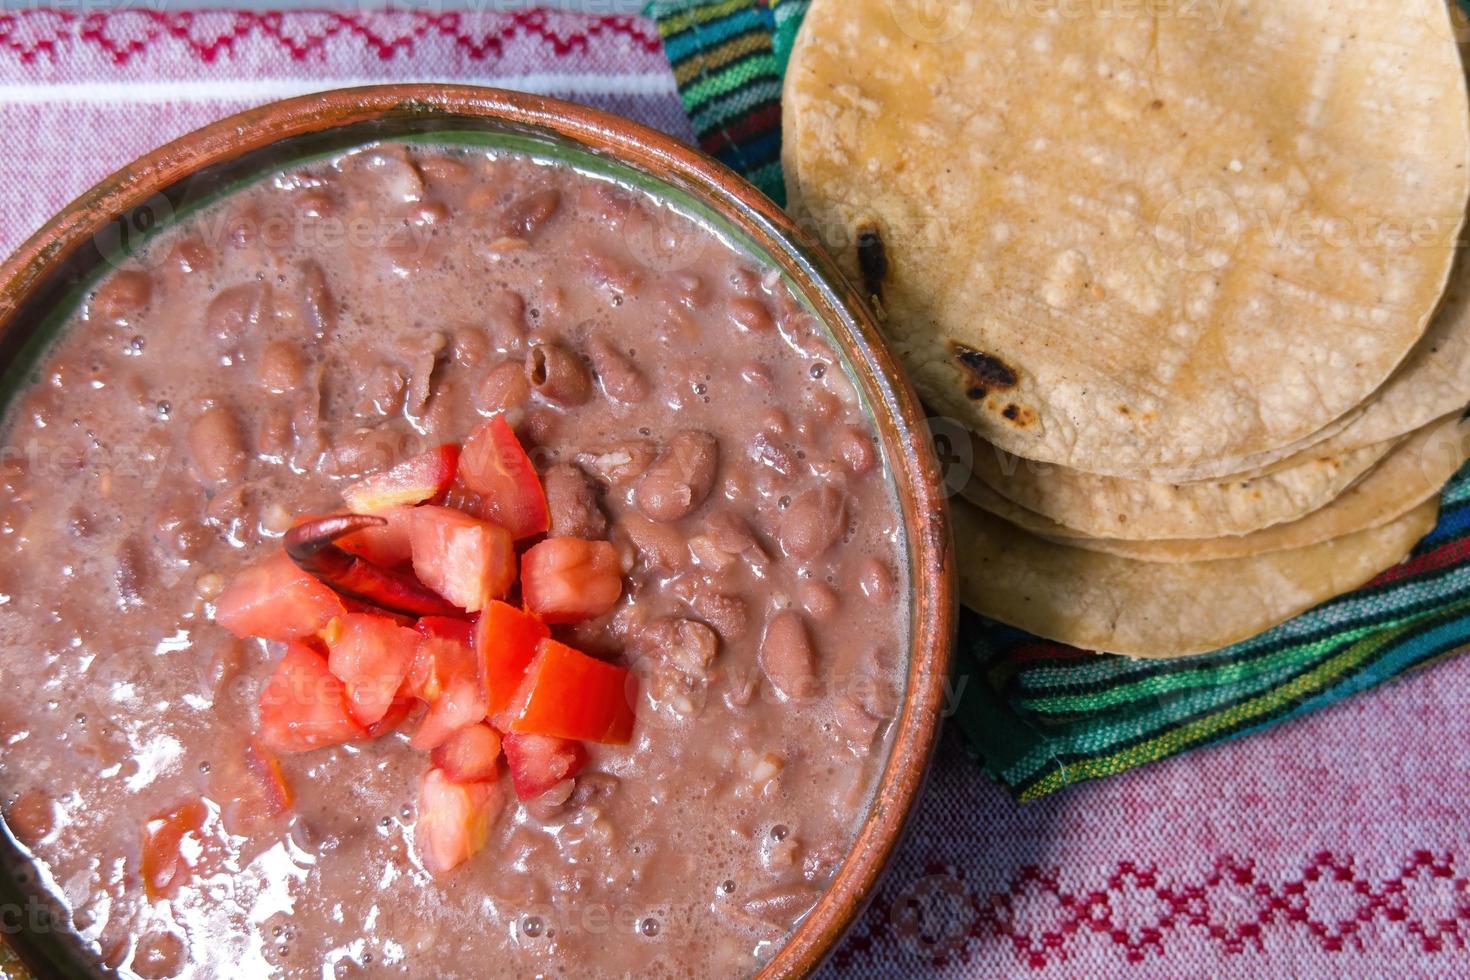 bohnen gekocht in einem lehmgericht mit tomaten und tortillas, mexikanisches armes gericht foto